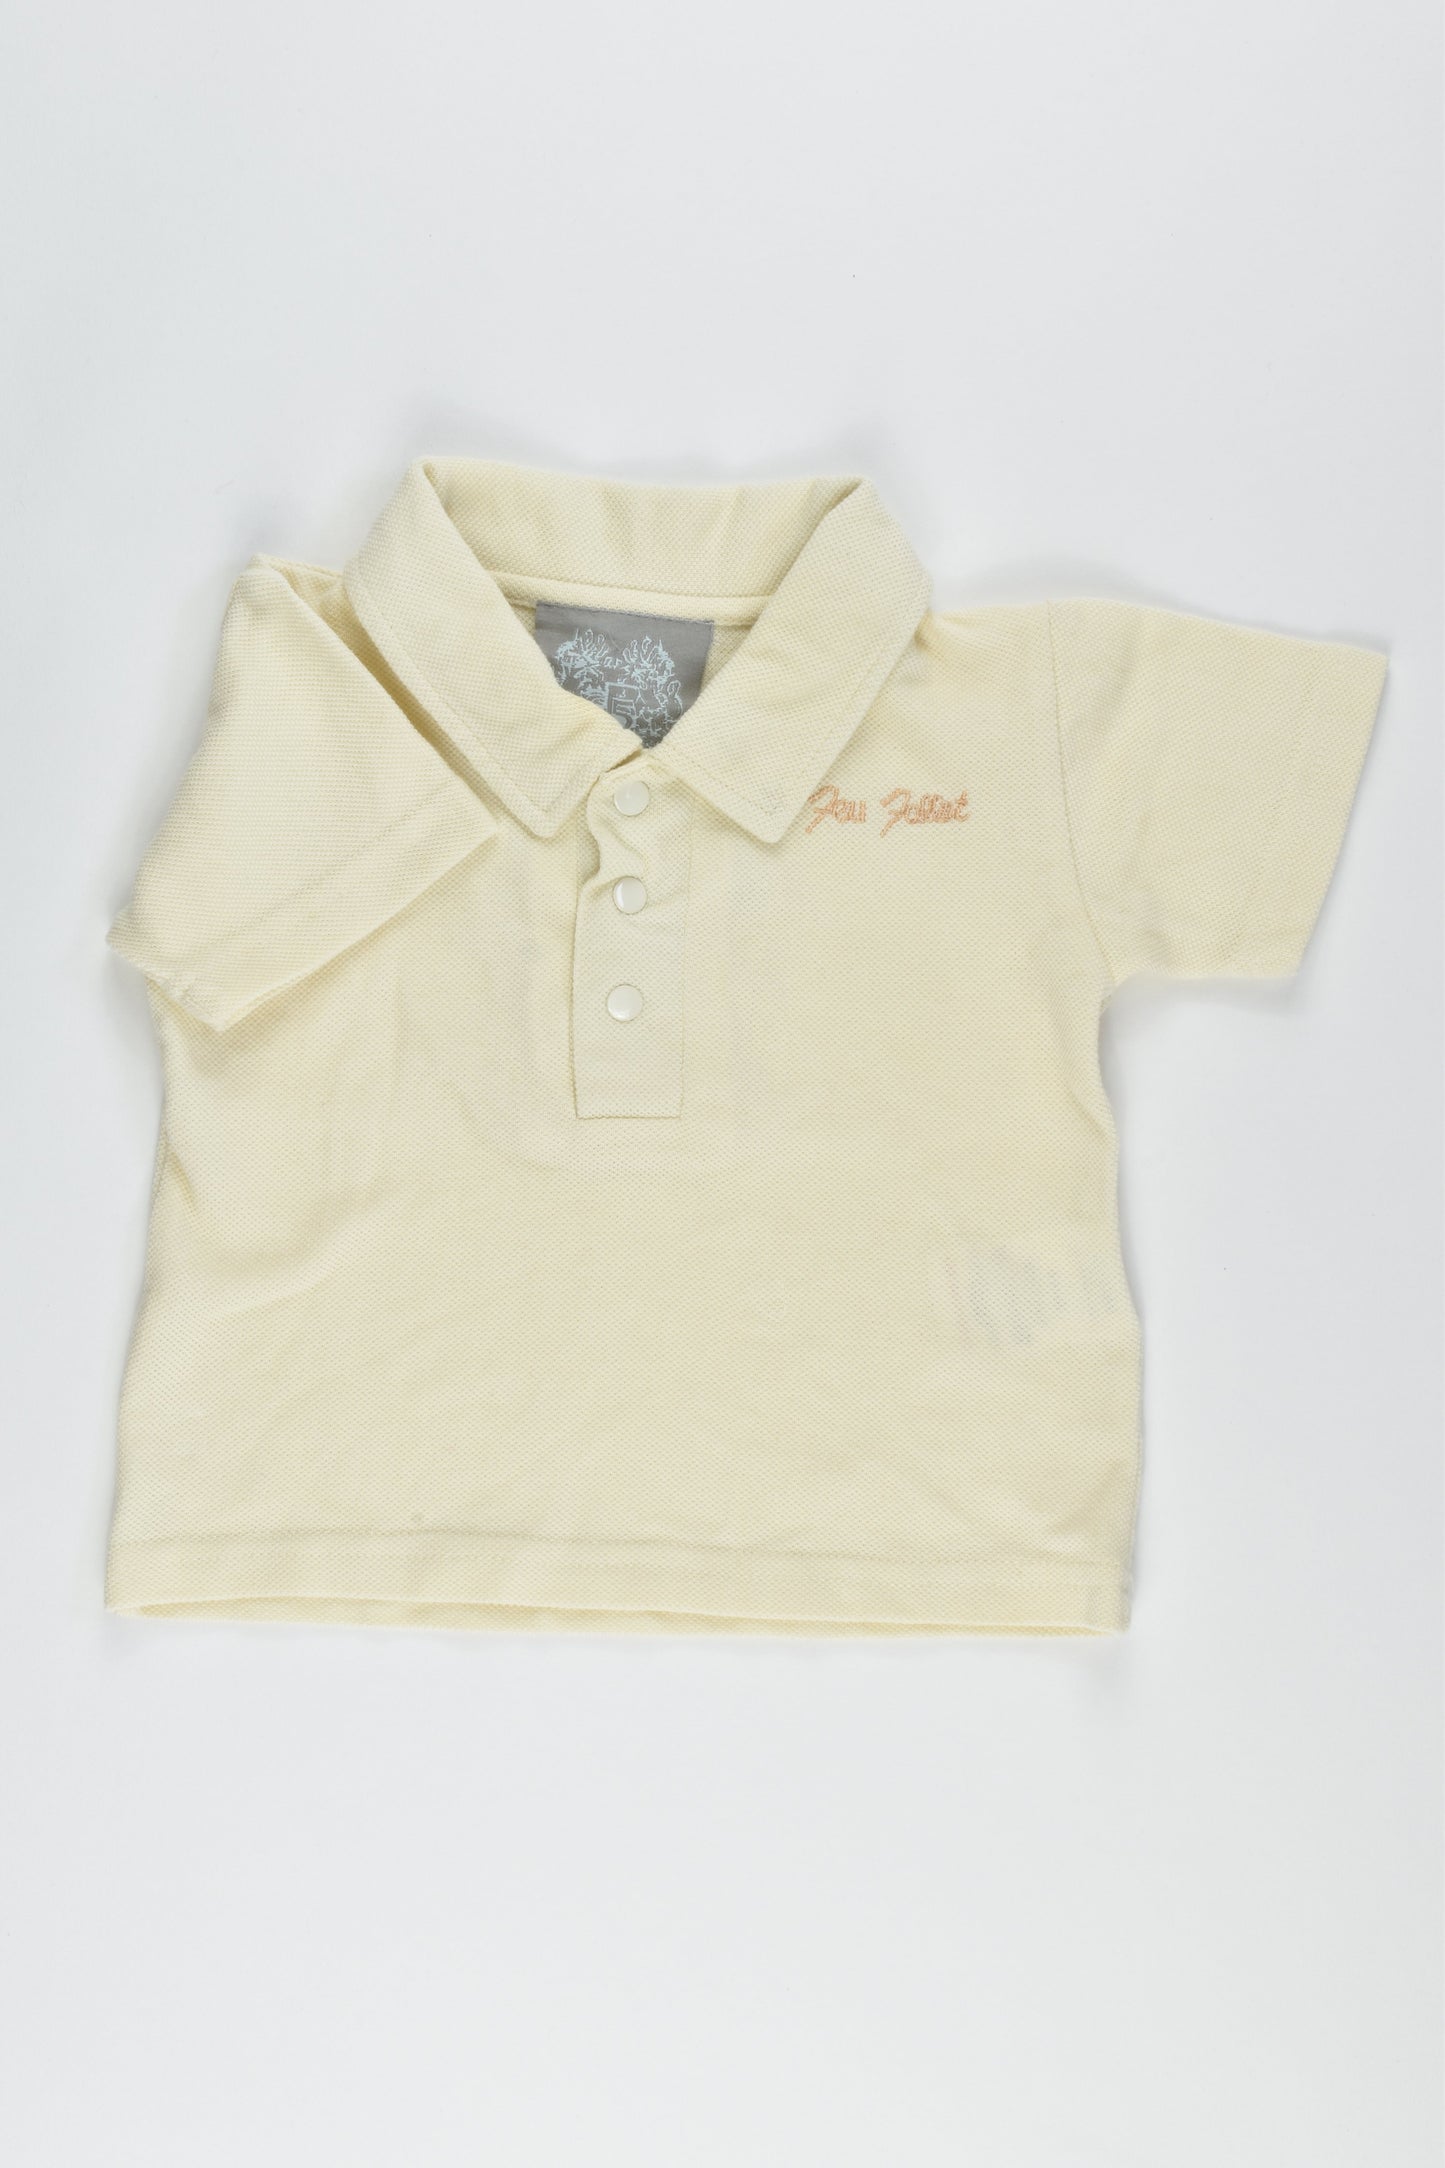 NEW Feu Follet Size 00-0 (6-9 months) T-shirt, collared